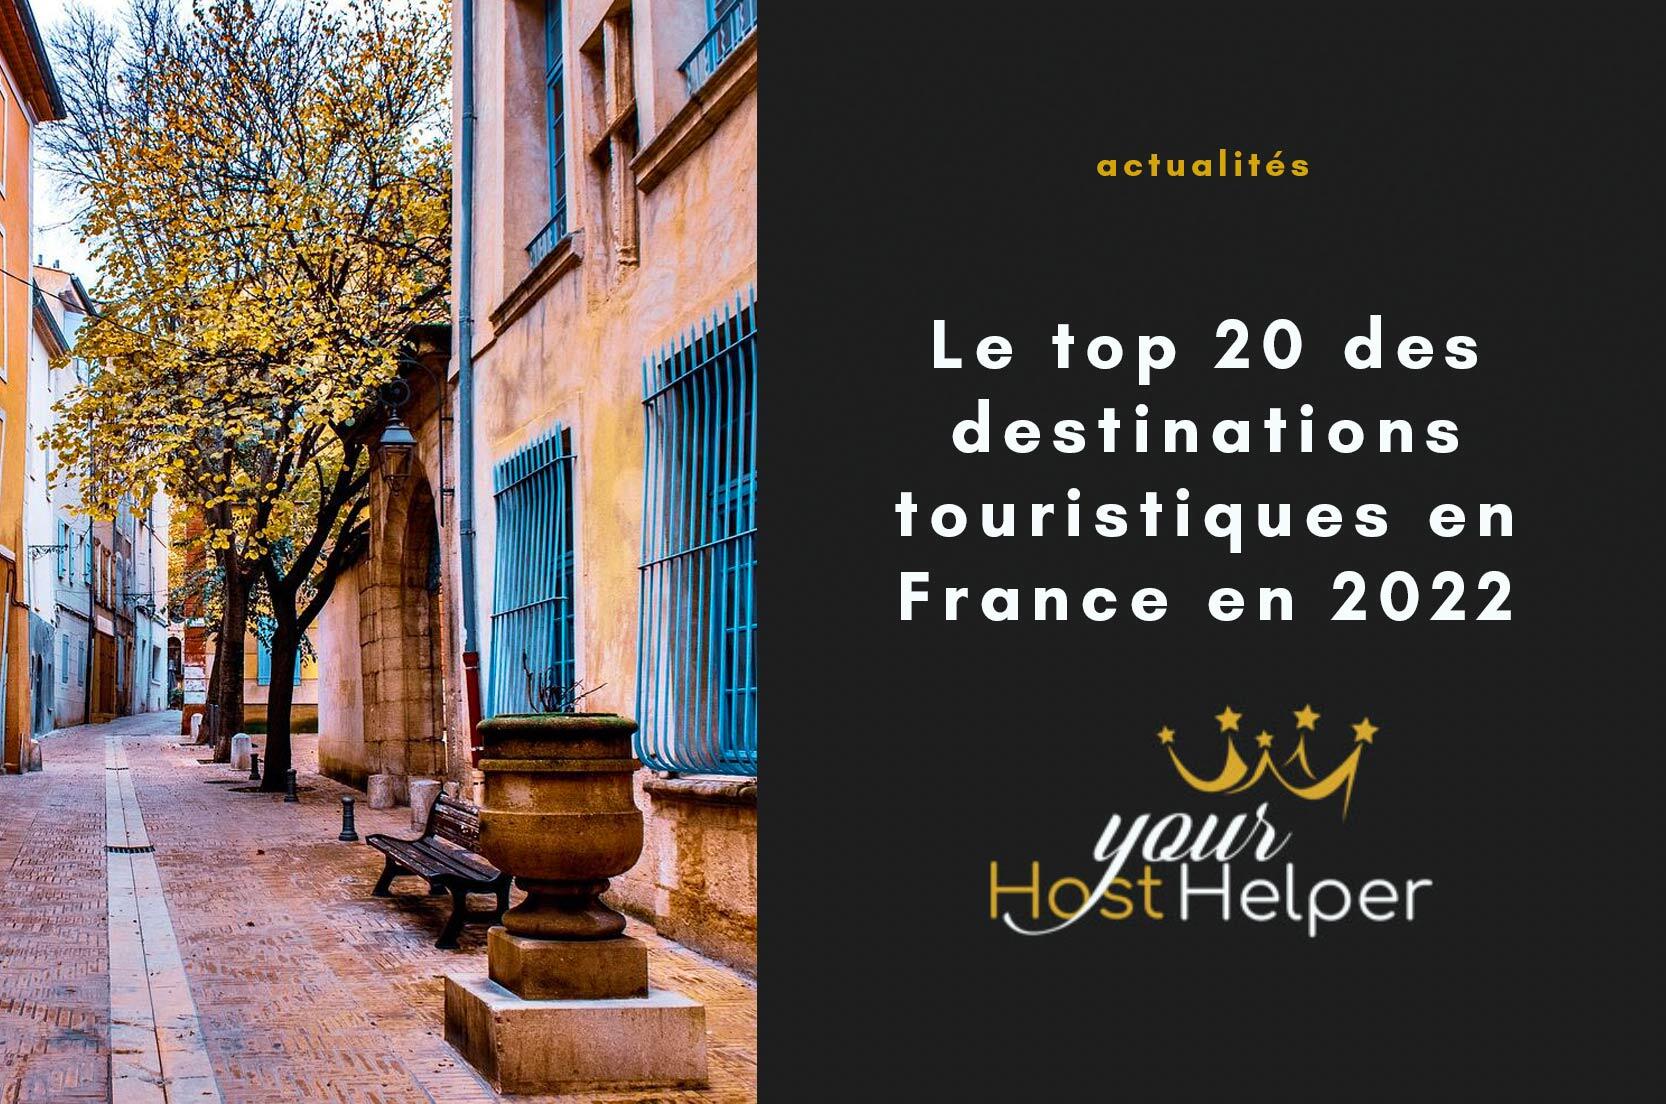 Вы сейчас просматриваете 20 лучших туристических направлений во Франции в 2022 году.